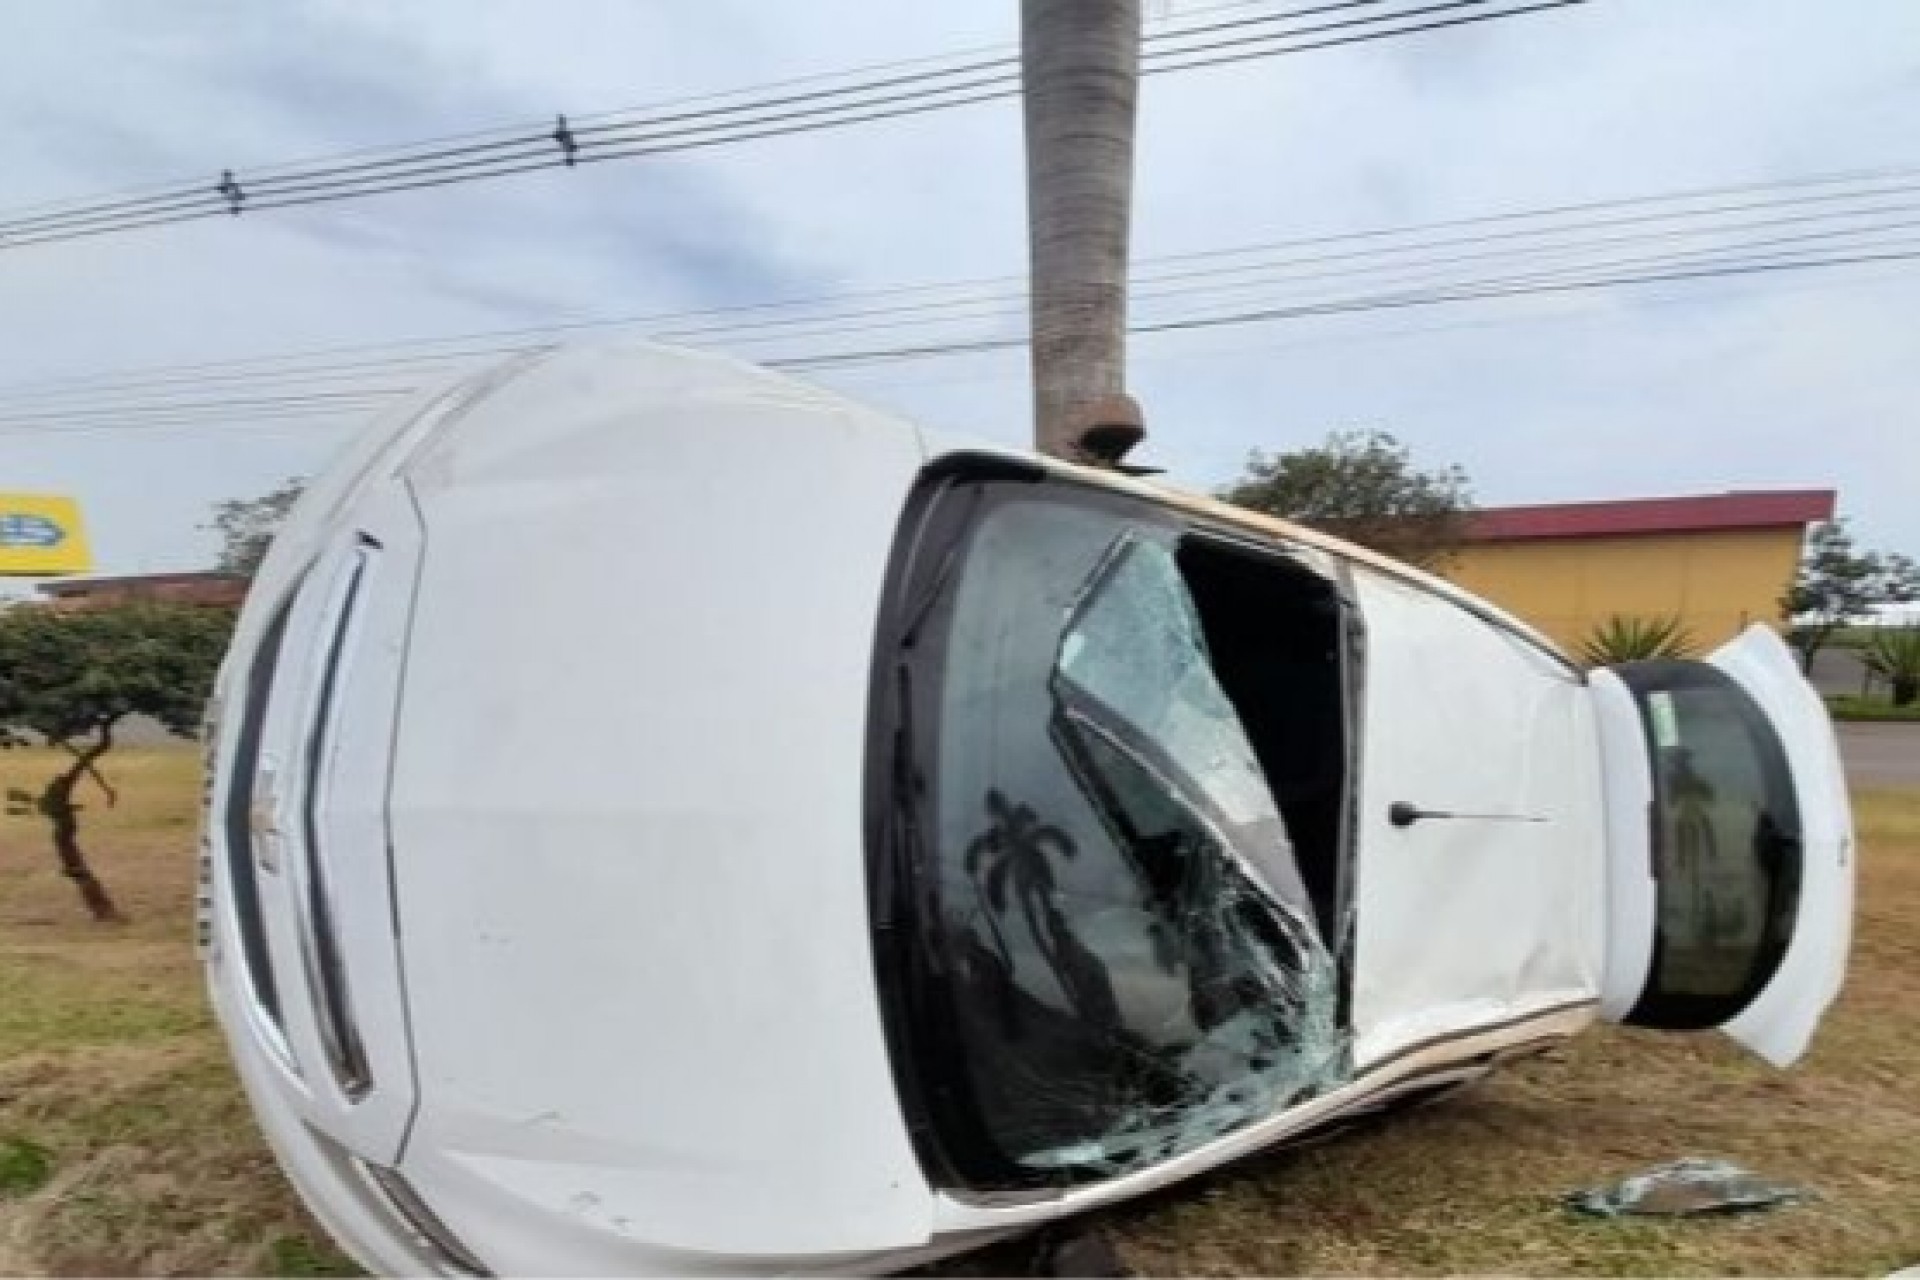 GM Onix parcialmente tomba em acidente na PR 488 em Santa Helena